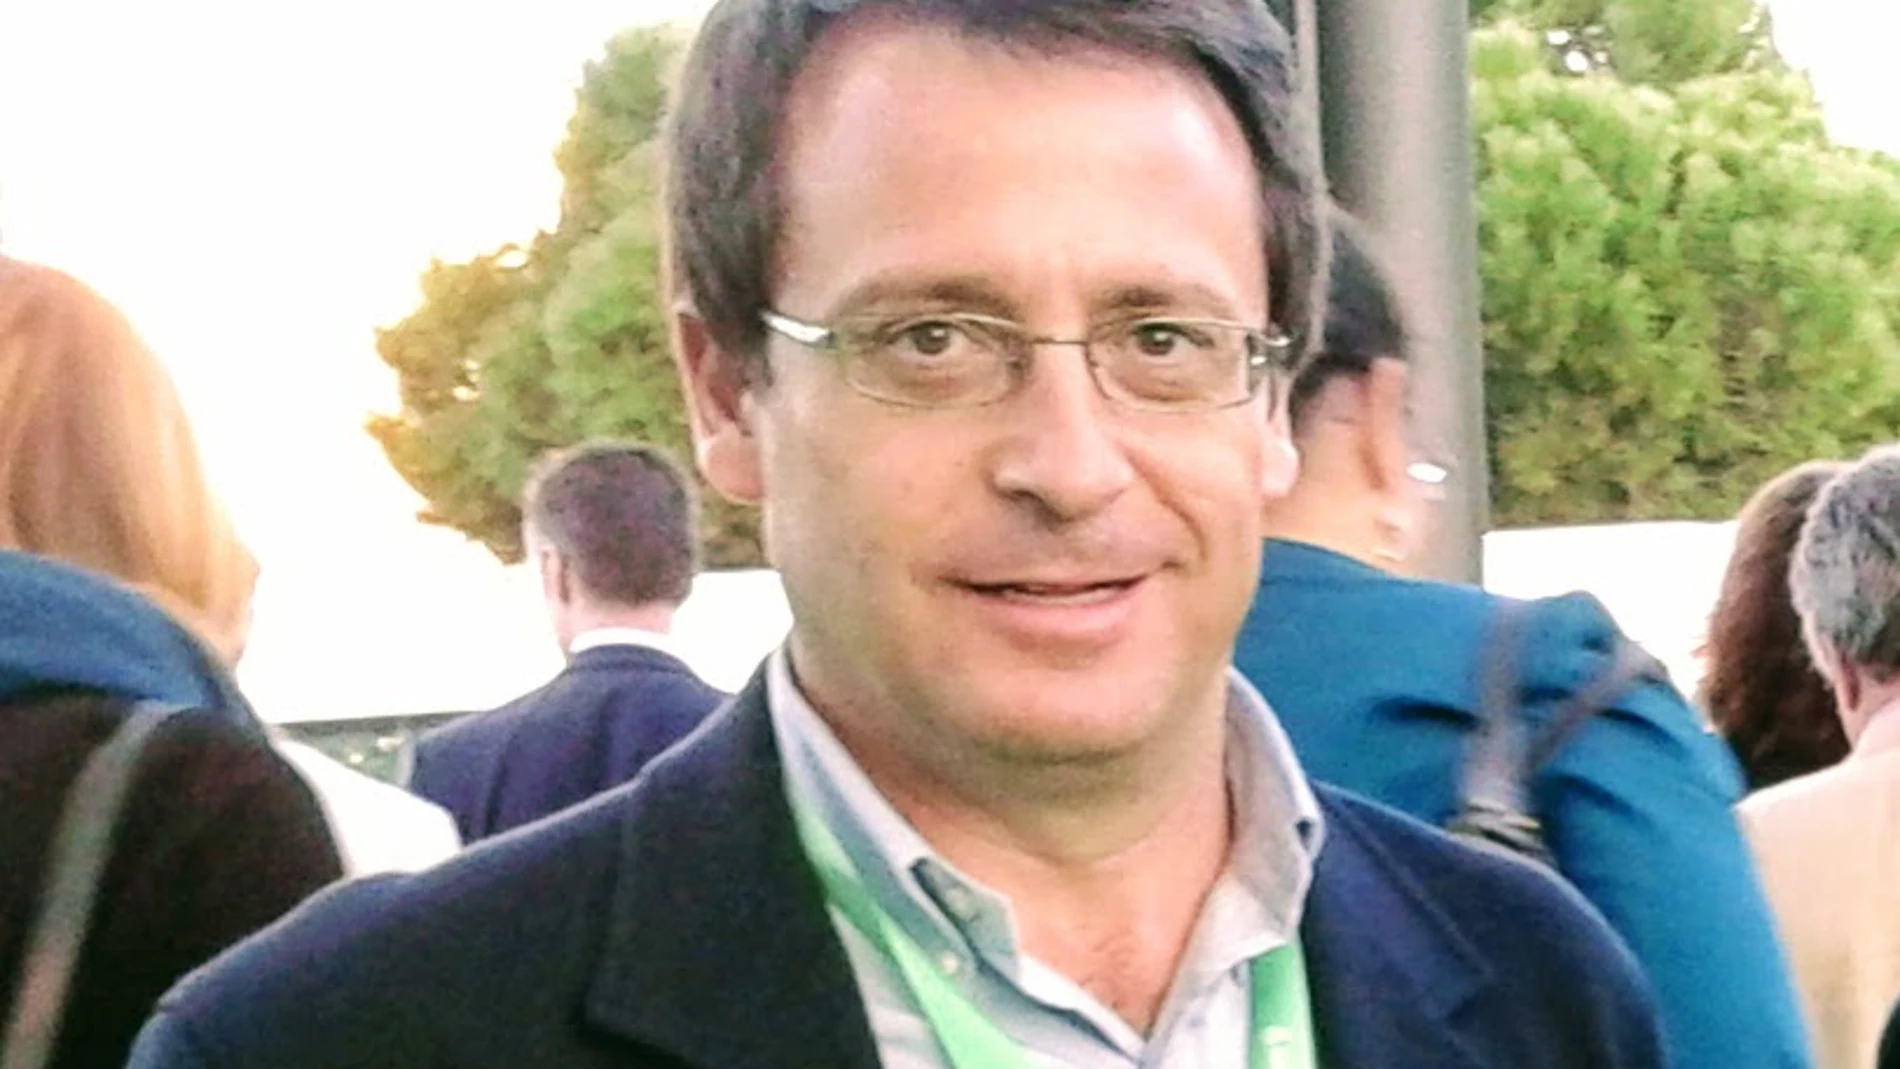 El doctor Tomás Ruiz Albi, neumólogo y miembro del Comité de Expertos frente al coronavirus de la Junta de Castilla y León